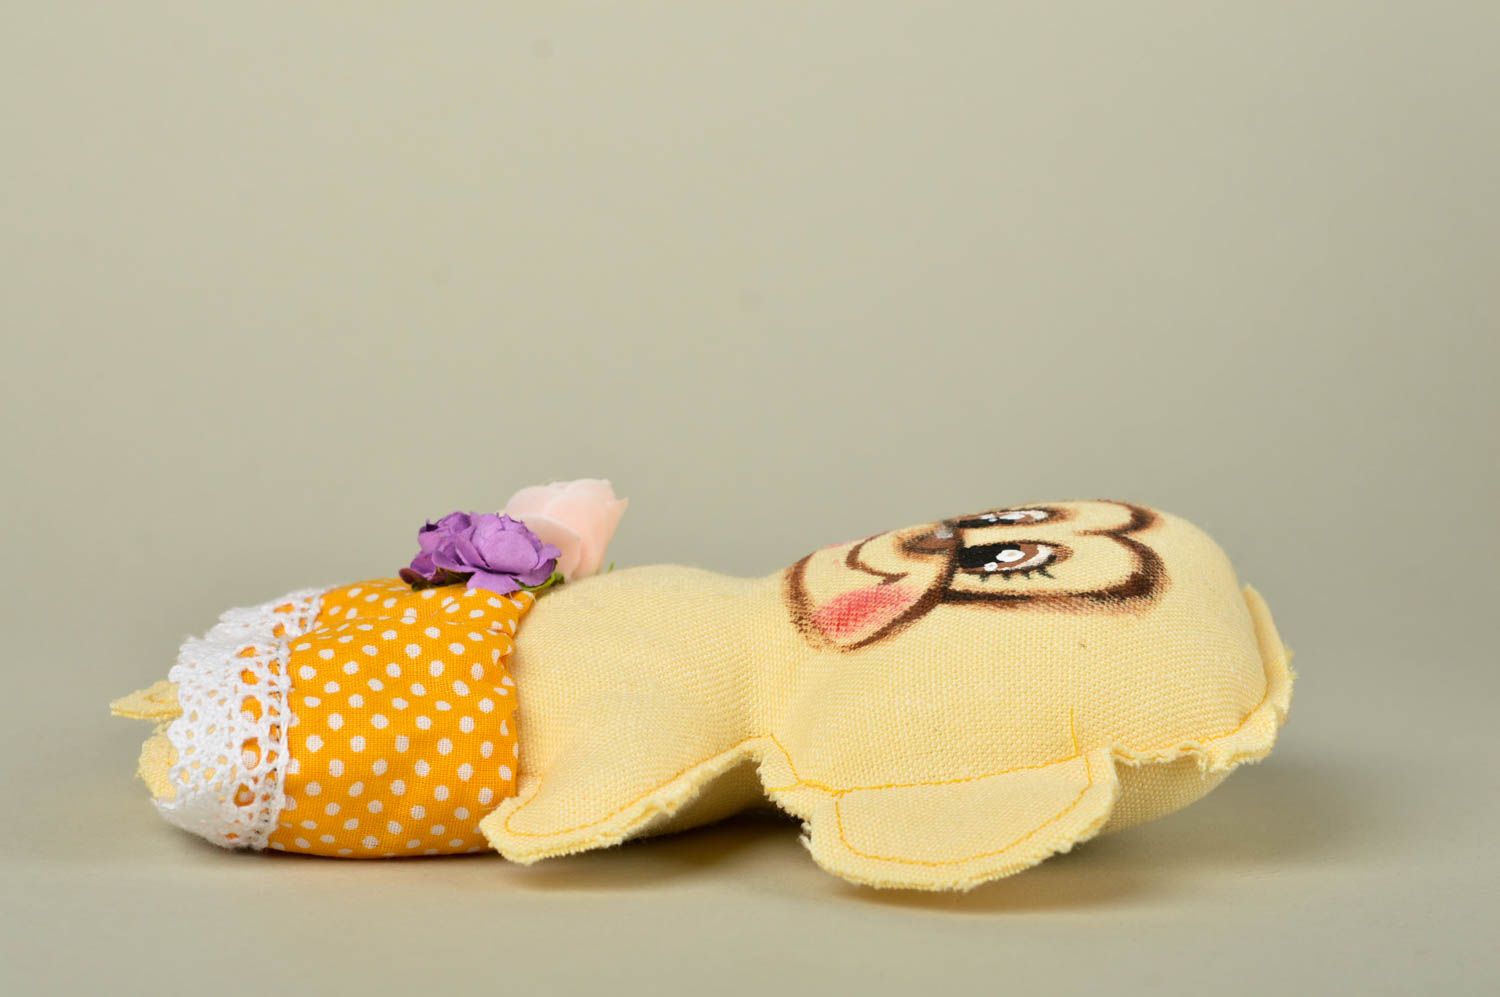 Игрушка ручной работы игрушка обезьянка в платье оригинальная игрушка из хлопка фото 2